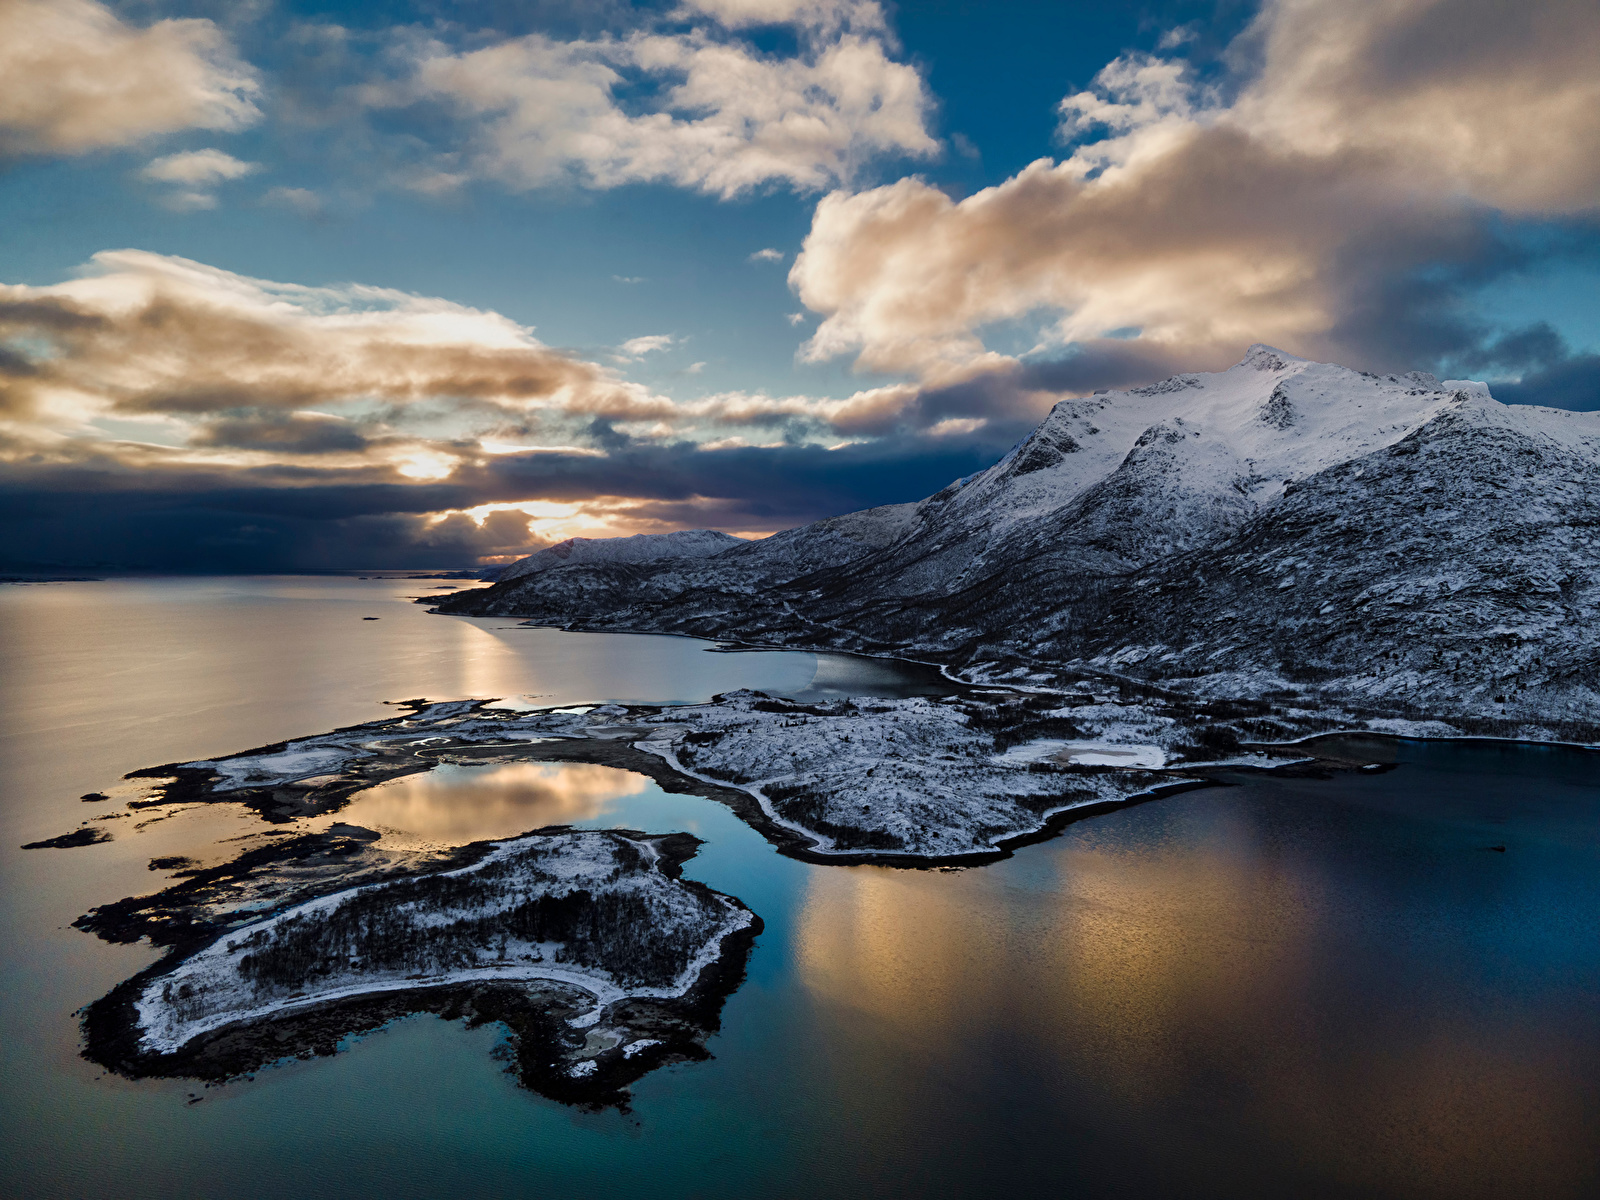 Обои для рабочего стола Лофотенские острова Норвегия Lødingen Горы Природа Побережье Облака 1600x1200 гора берег облако облачно